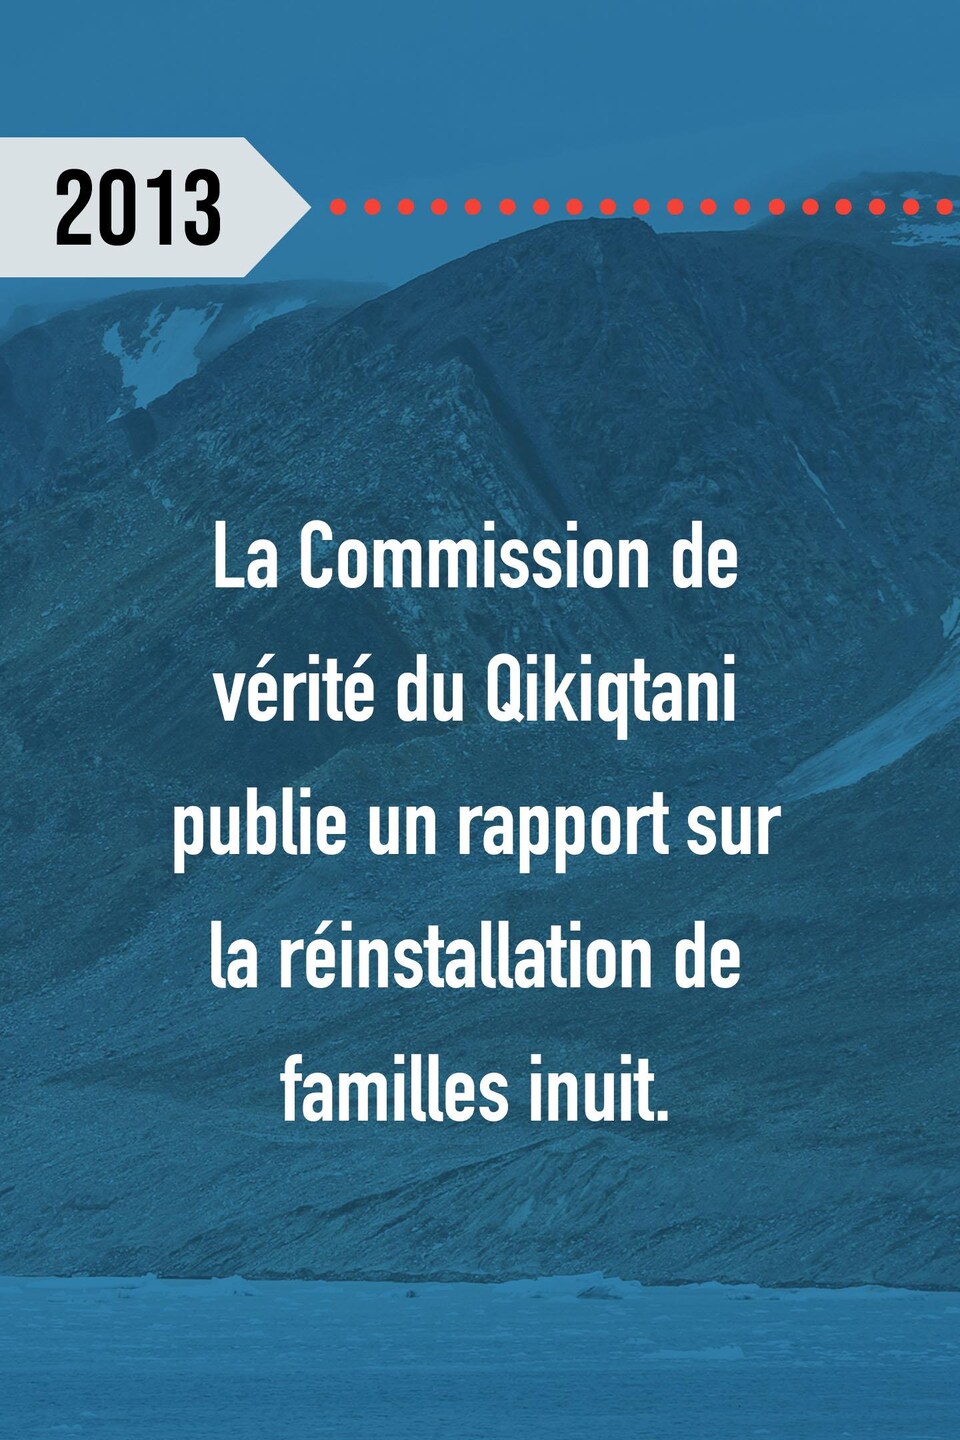 2013 : La Commission de vérité du Qikiqtani publie un rapport sur la réinstallation de familles inuit.